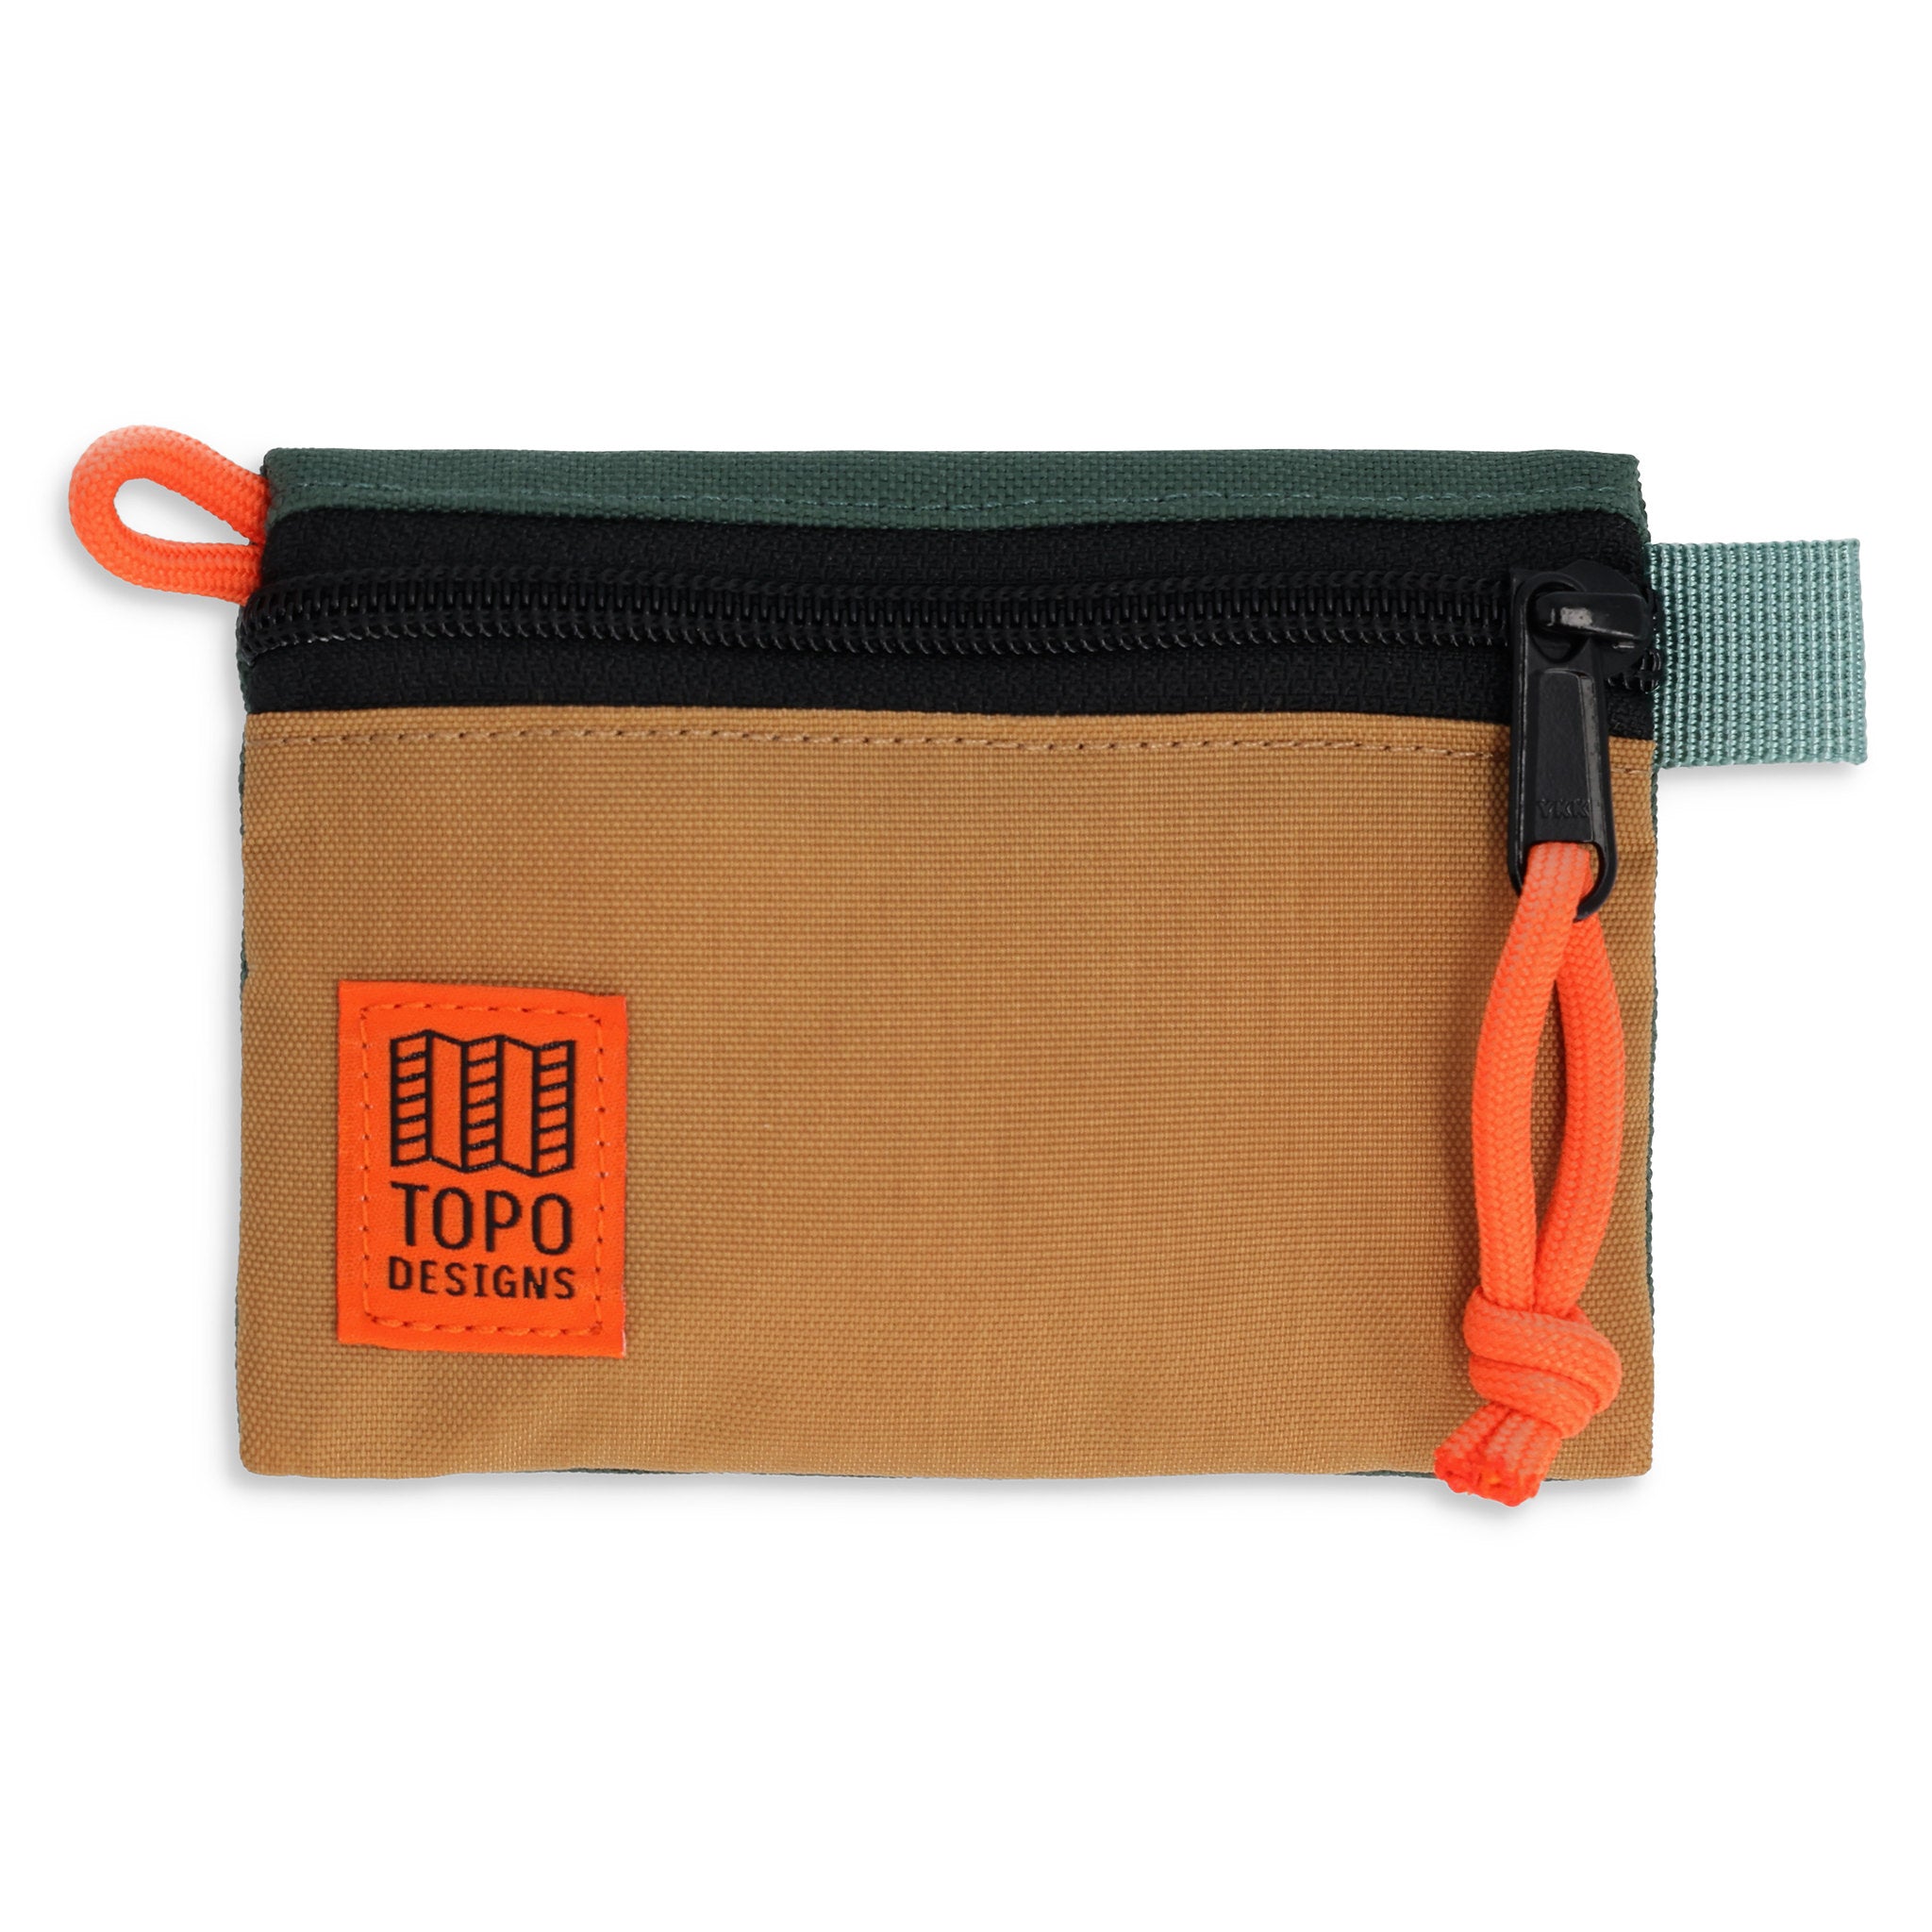 Accessory Bag Micro | Topo-Designs 